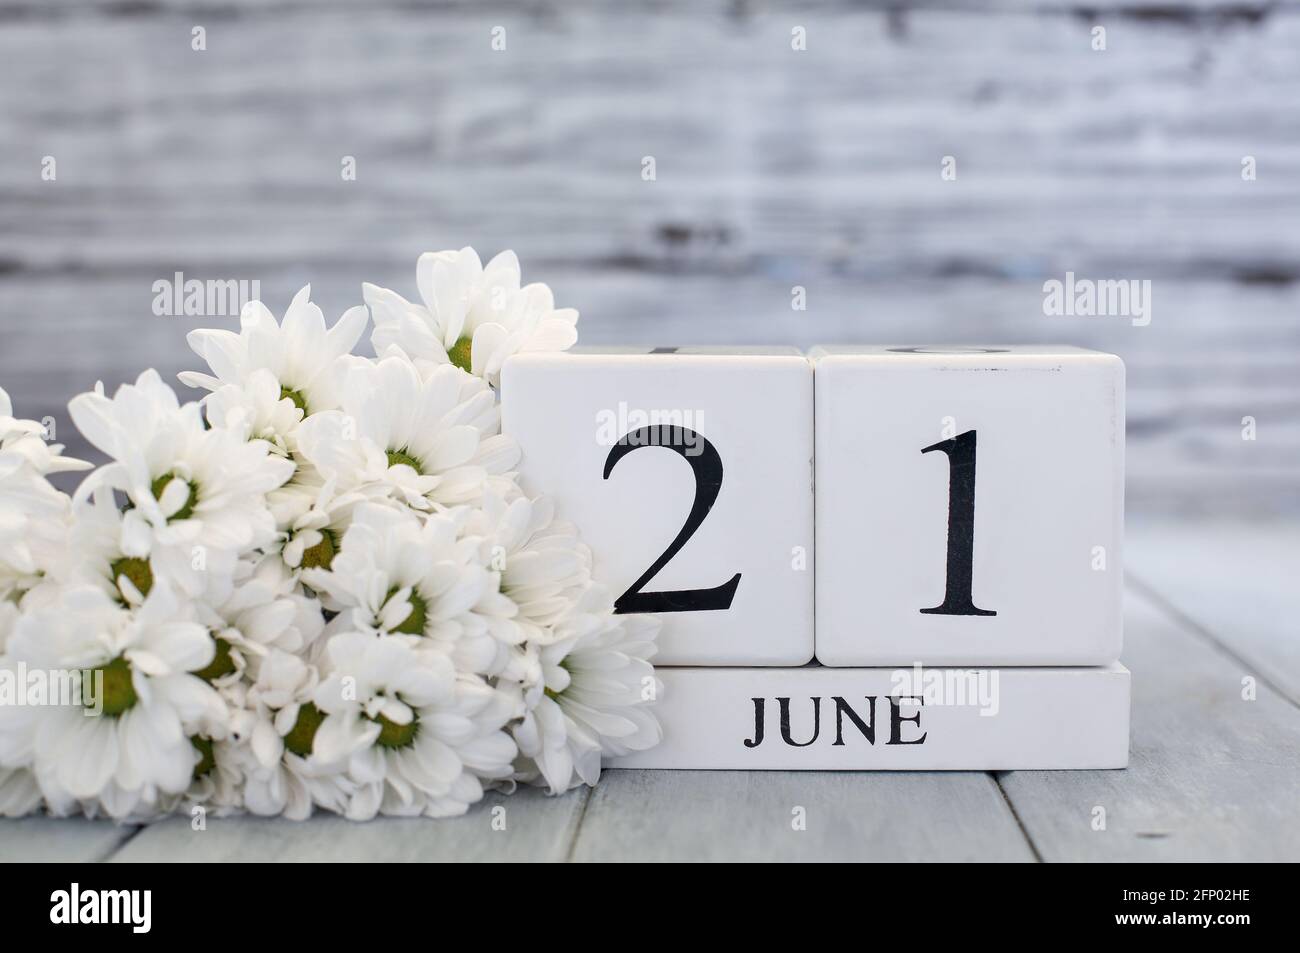 Le solstice d'été blocs de calendrier en bois blanc avec la date du 21 juin et des pâquerettes blanches. Mise au point sélective avec arrière-plan flou. Banque D'Images